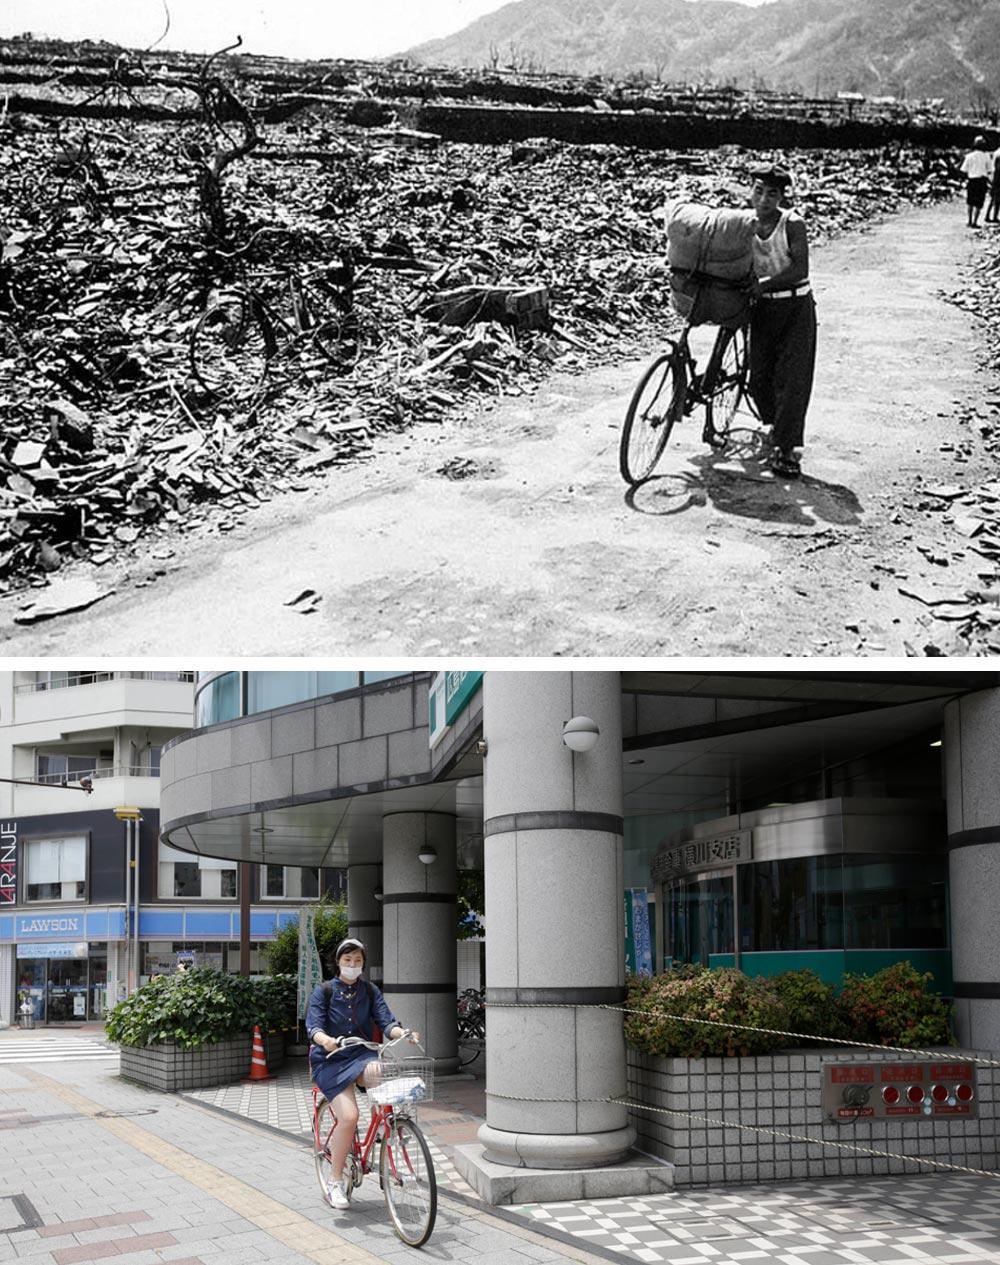 Хиросима и нагасаки фото до и после